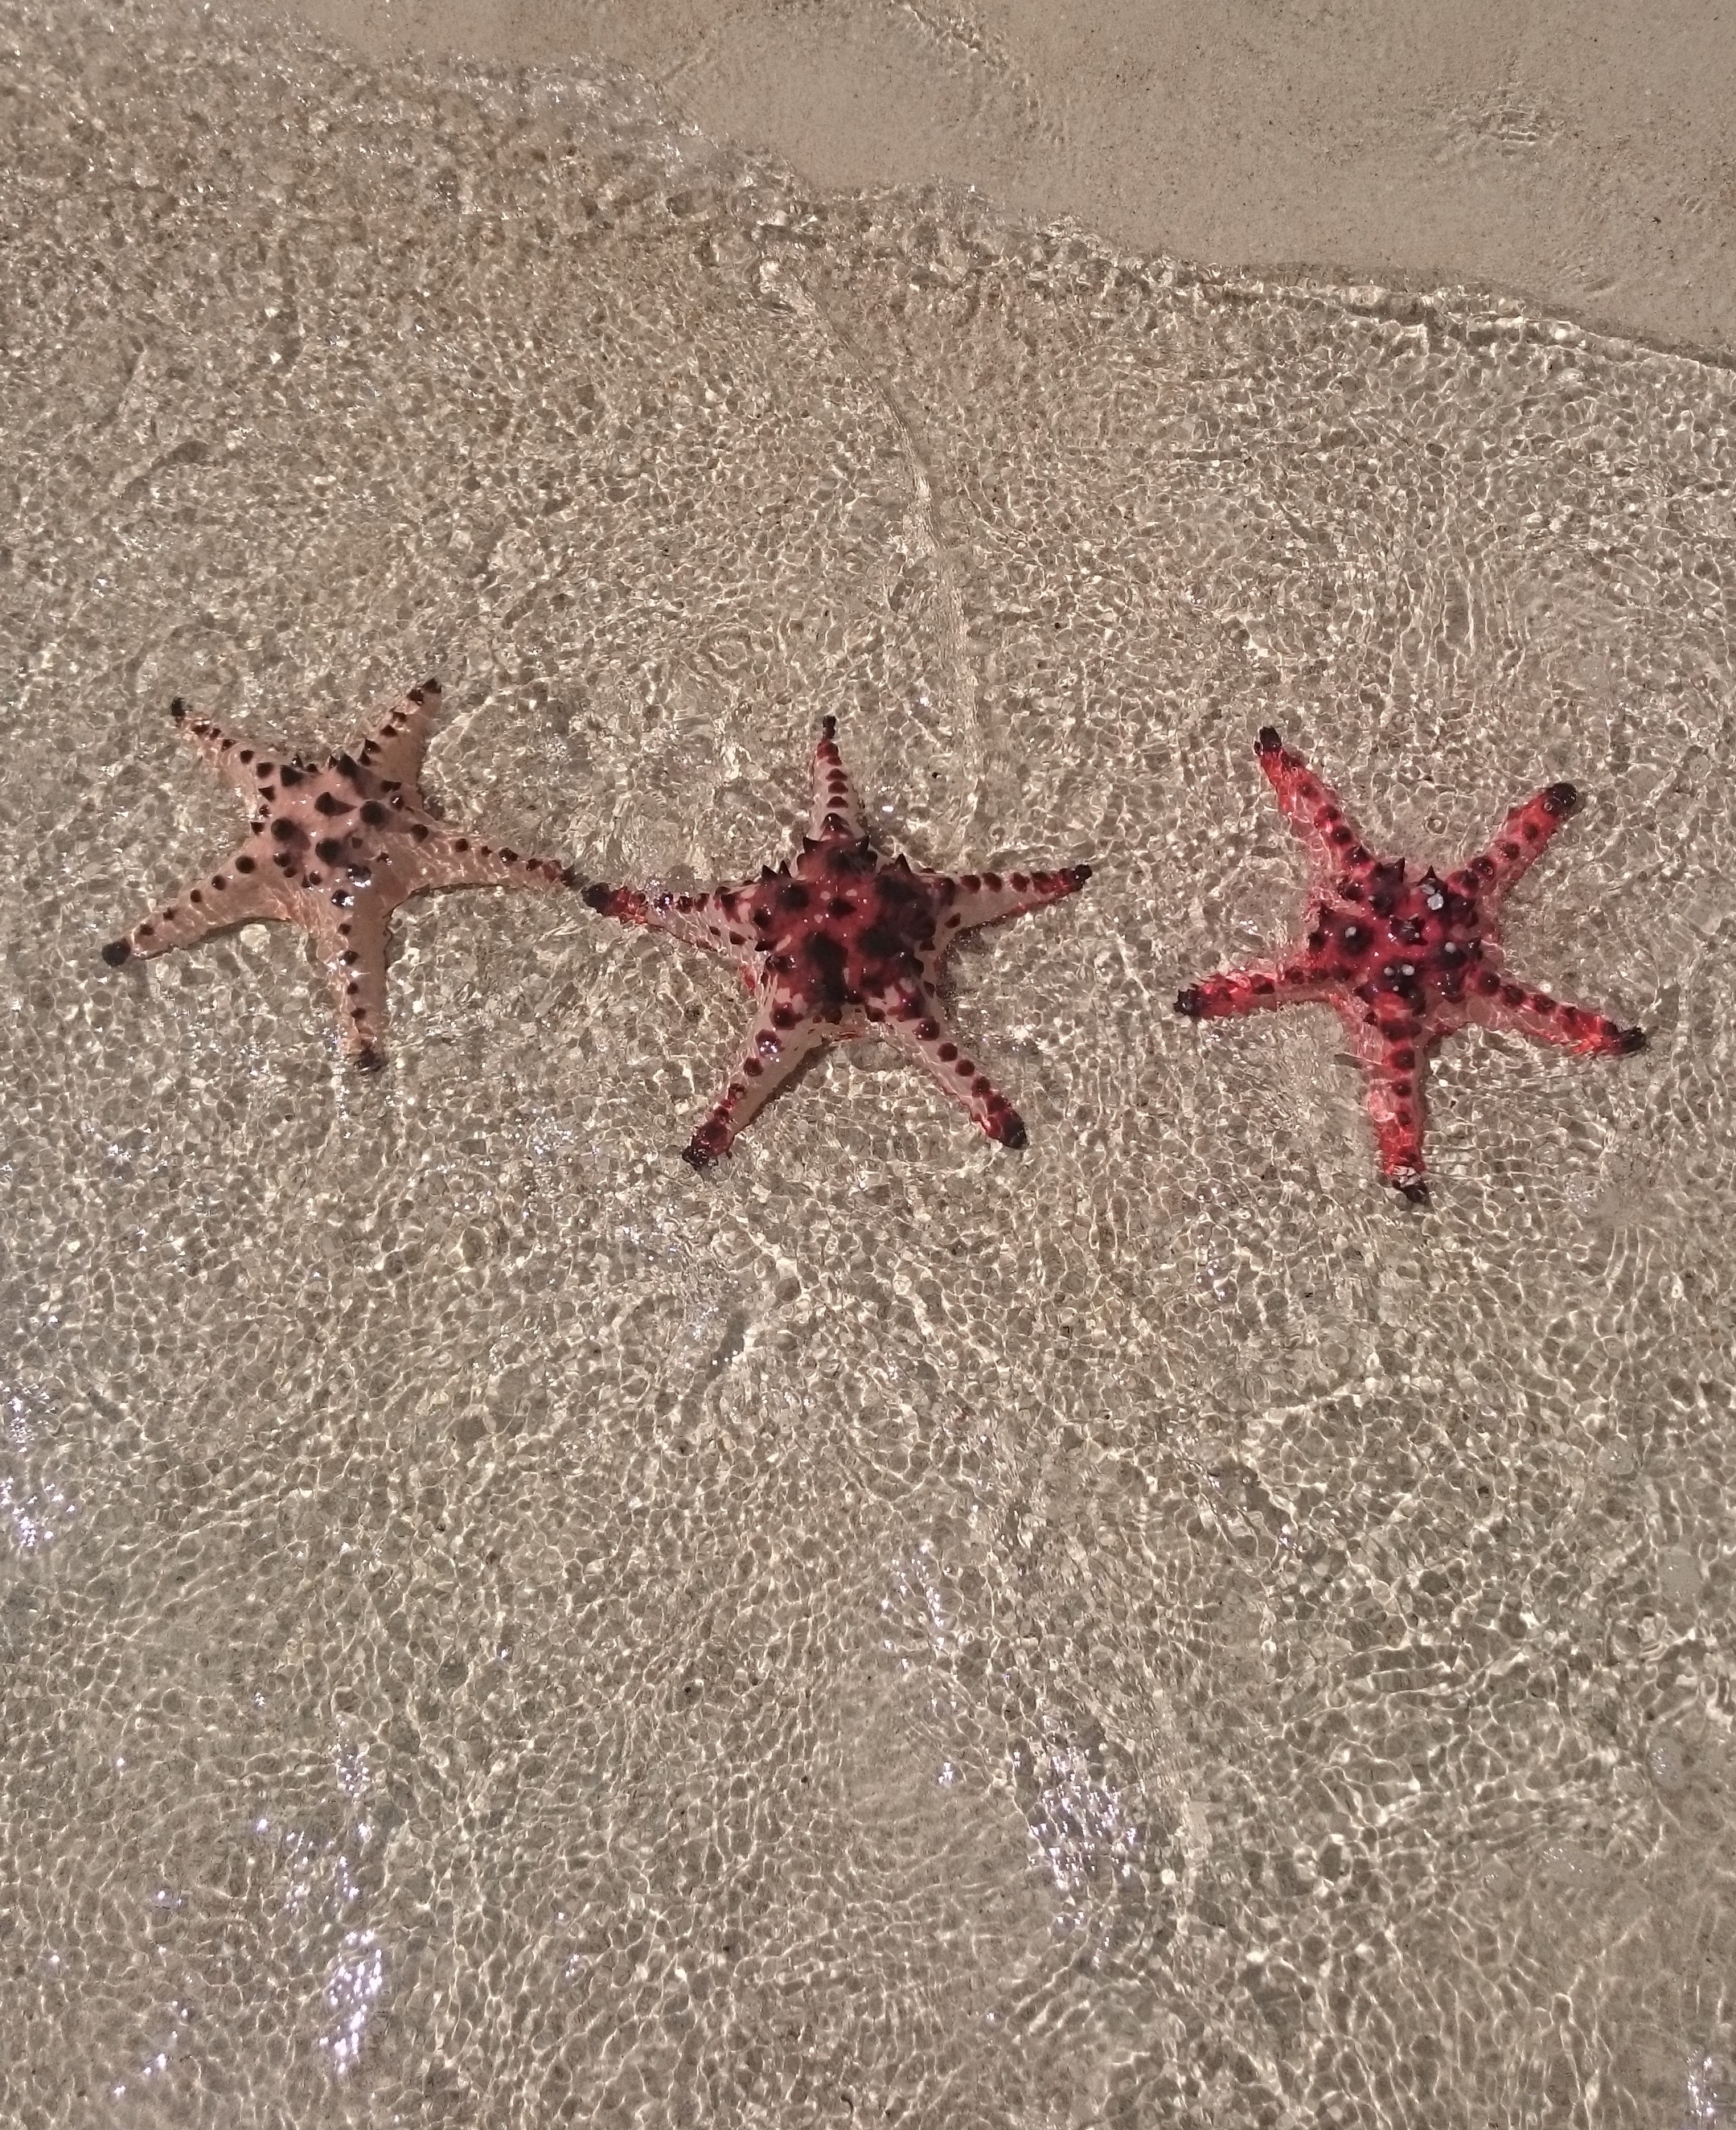 Sea Star: Beach, Nature, Sand, Ocean, Shore, Starfish, Echinoderm, Marine invertebrates. 2160x2650 HD Wallpaper.